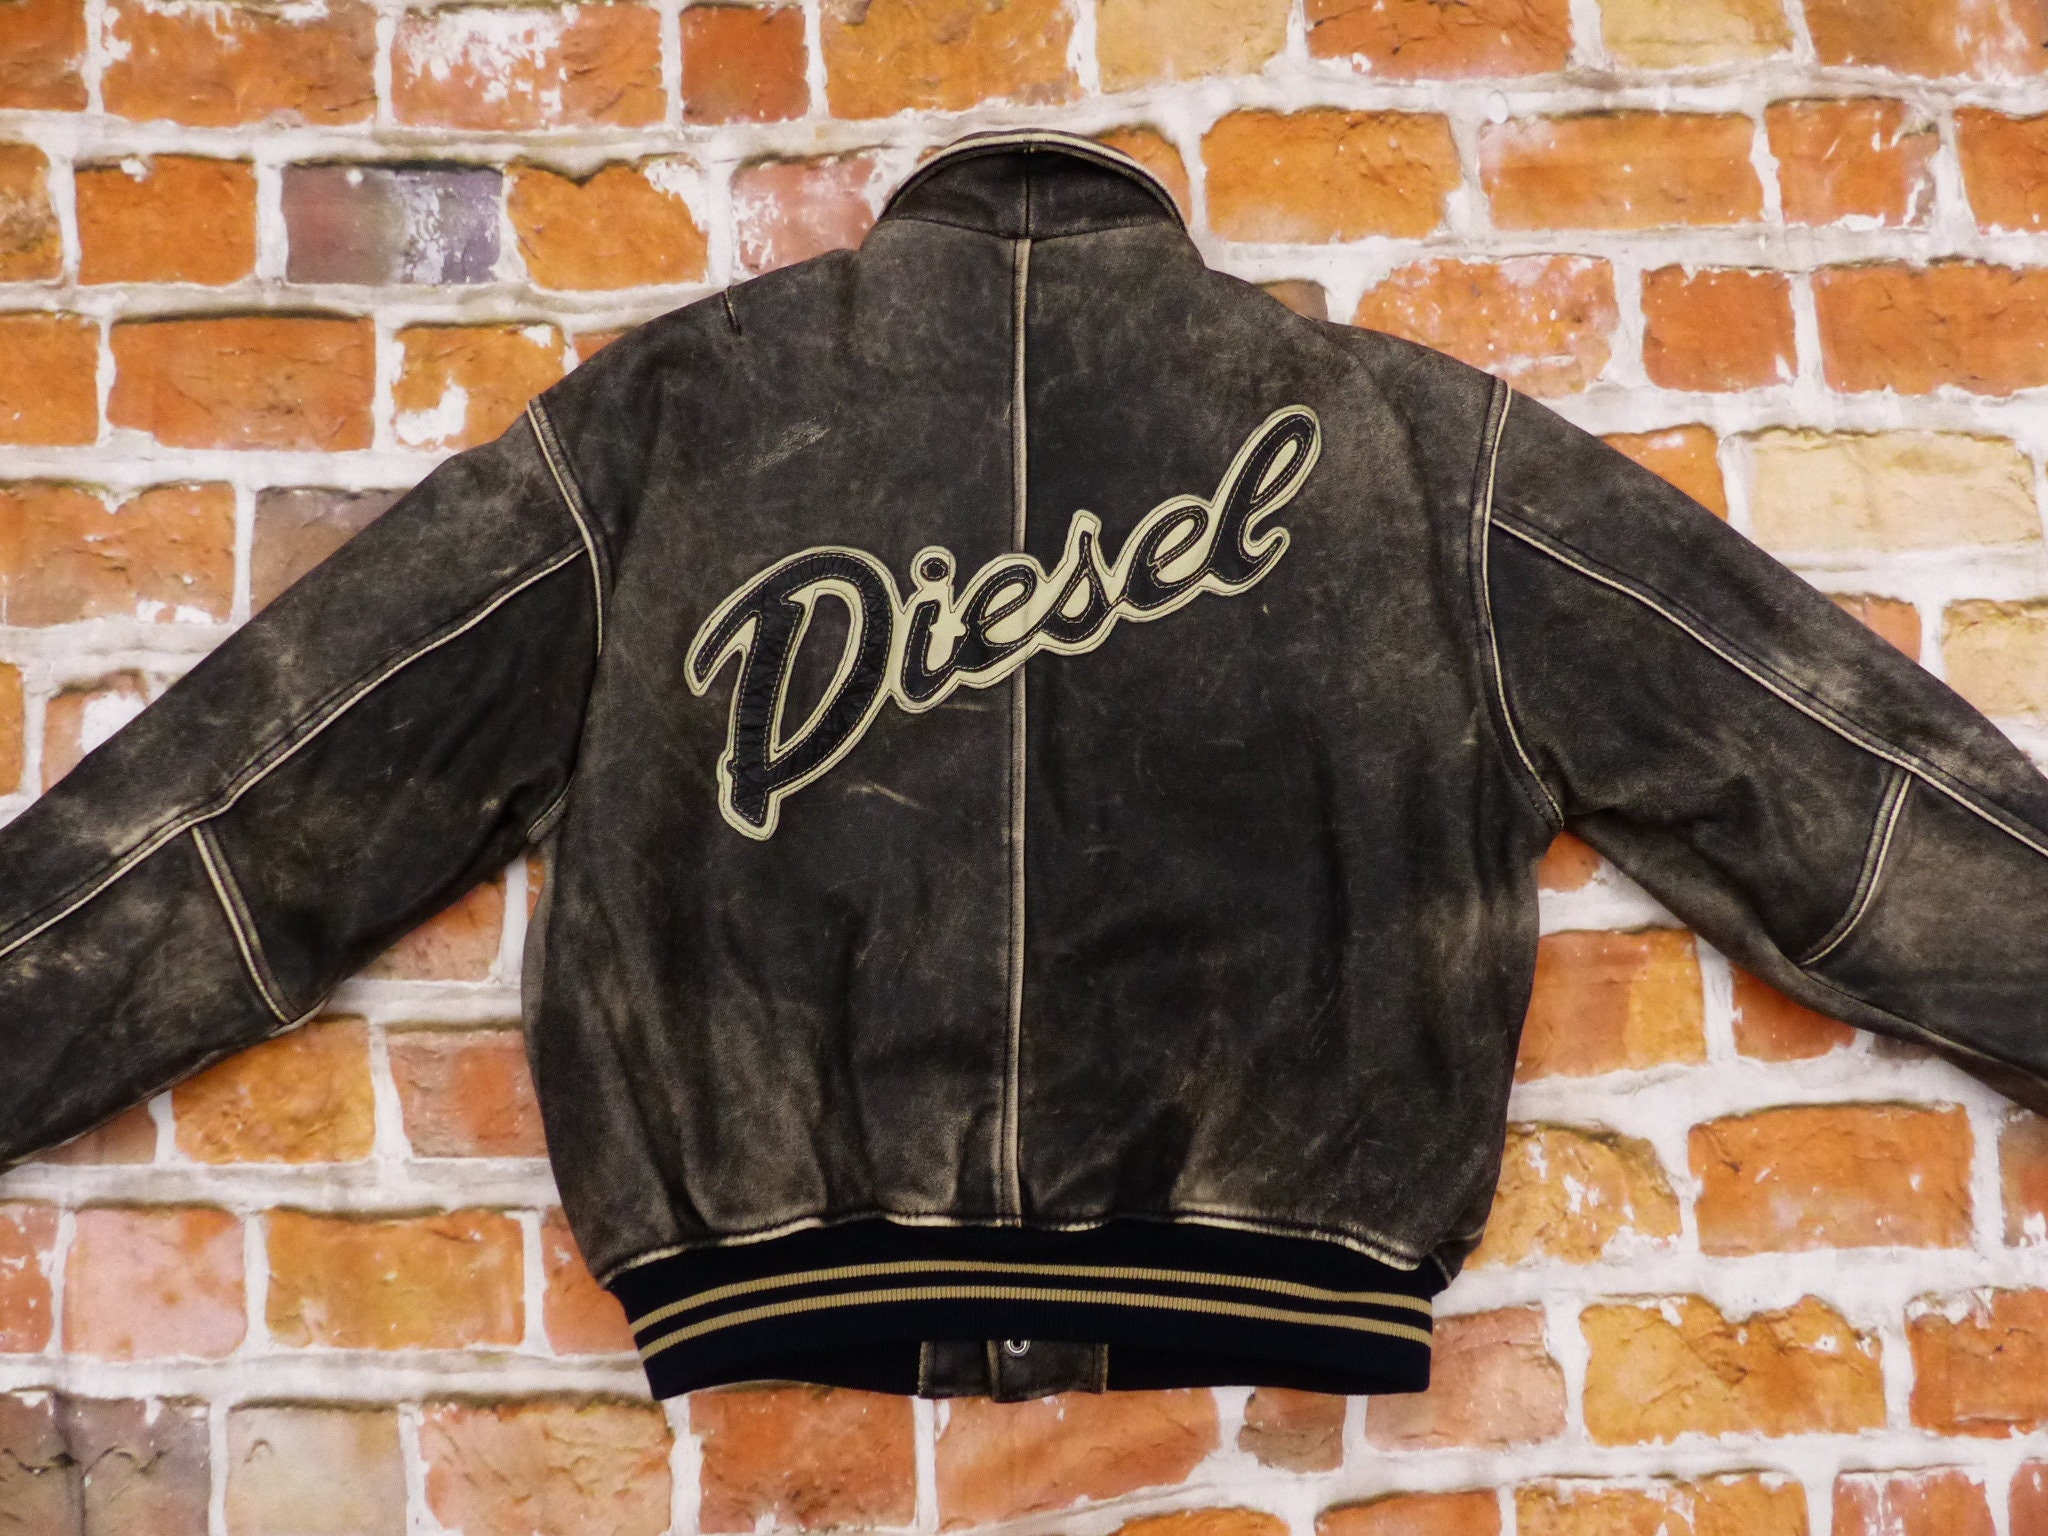 Diesel Vintage Leather Jacket Cursive Writing Stone Grey Varsity